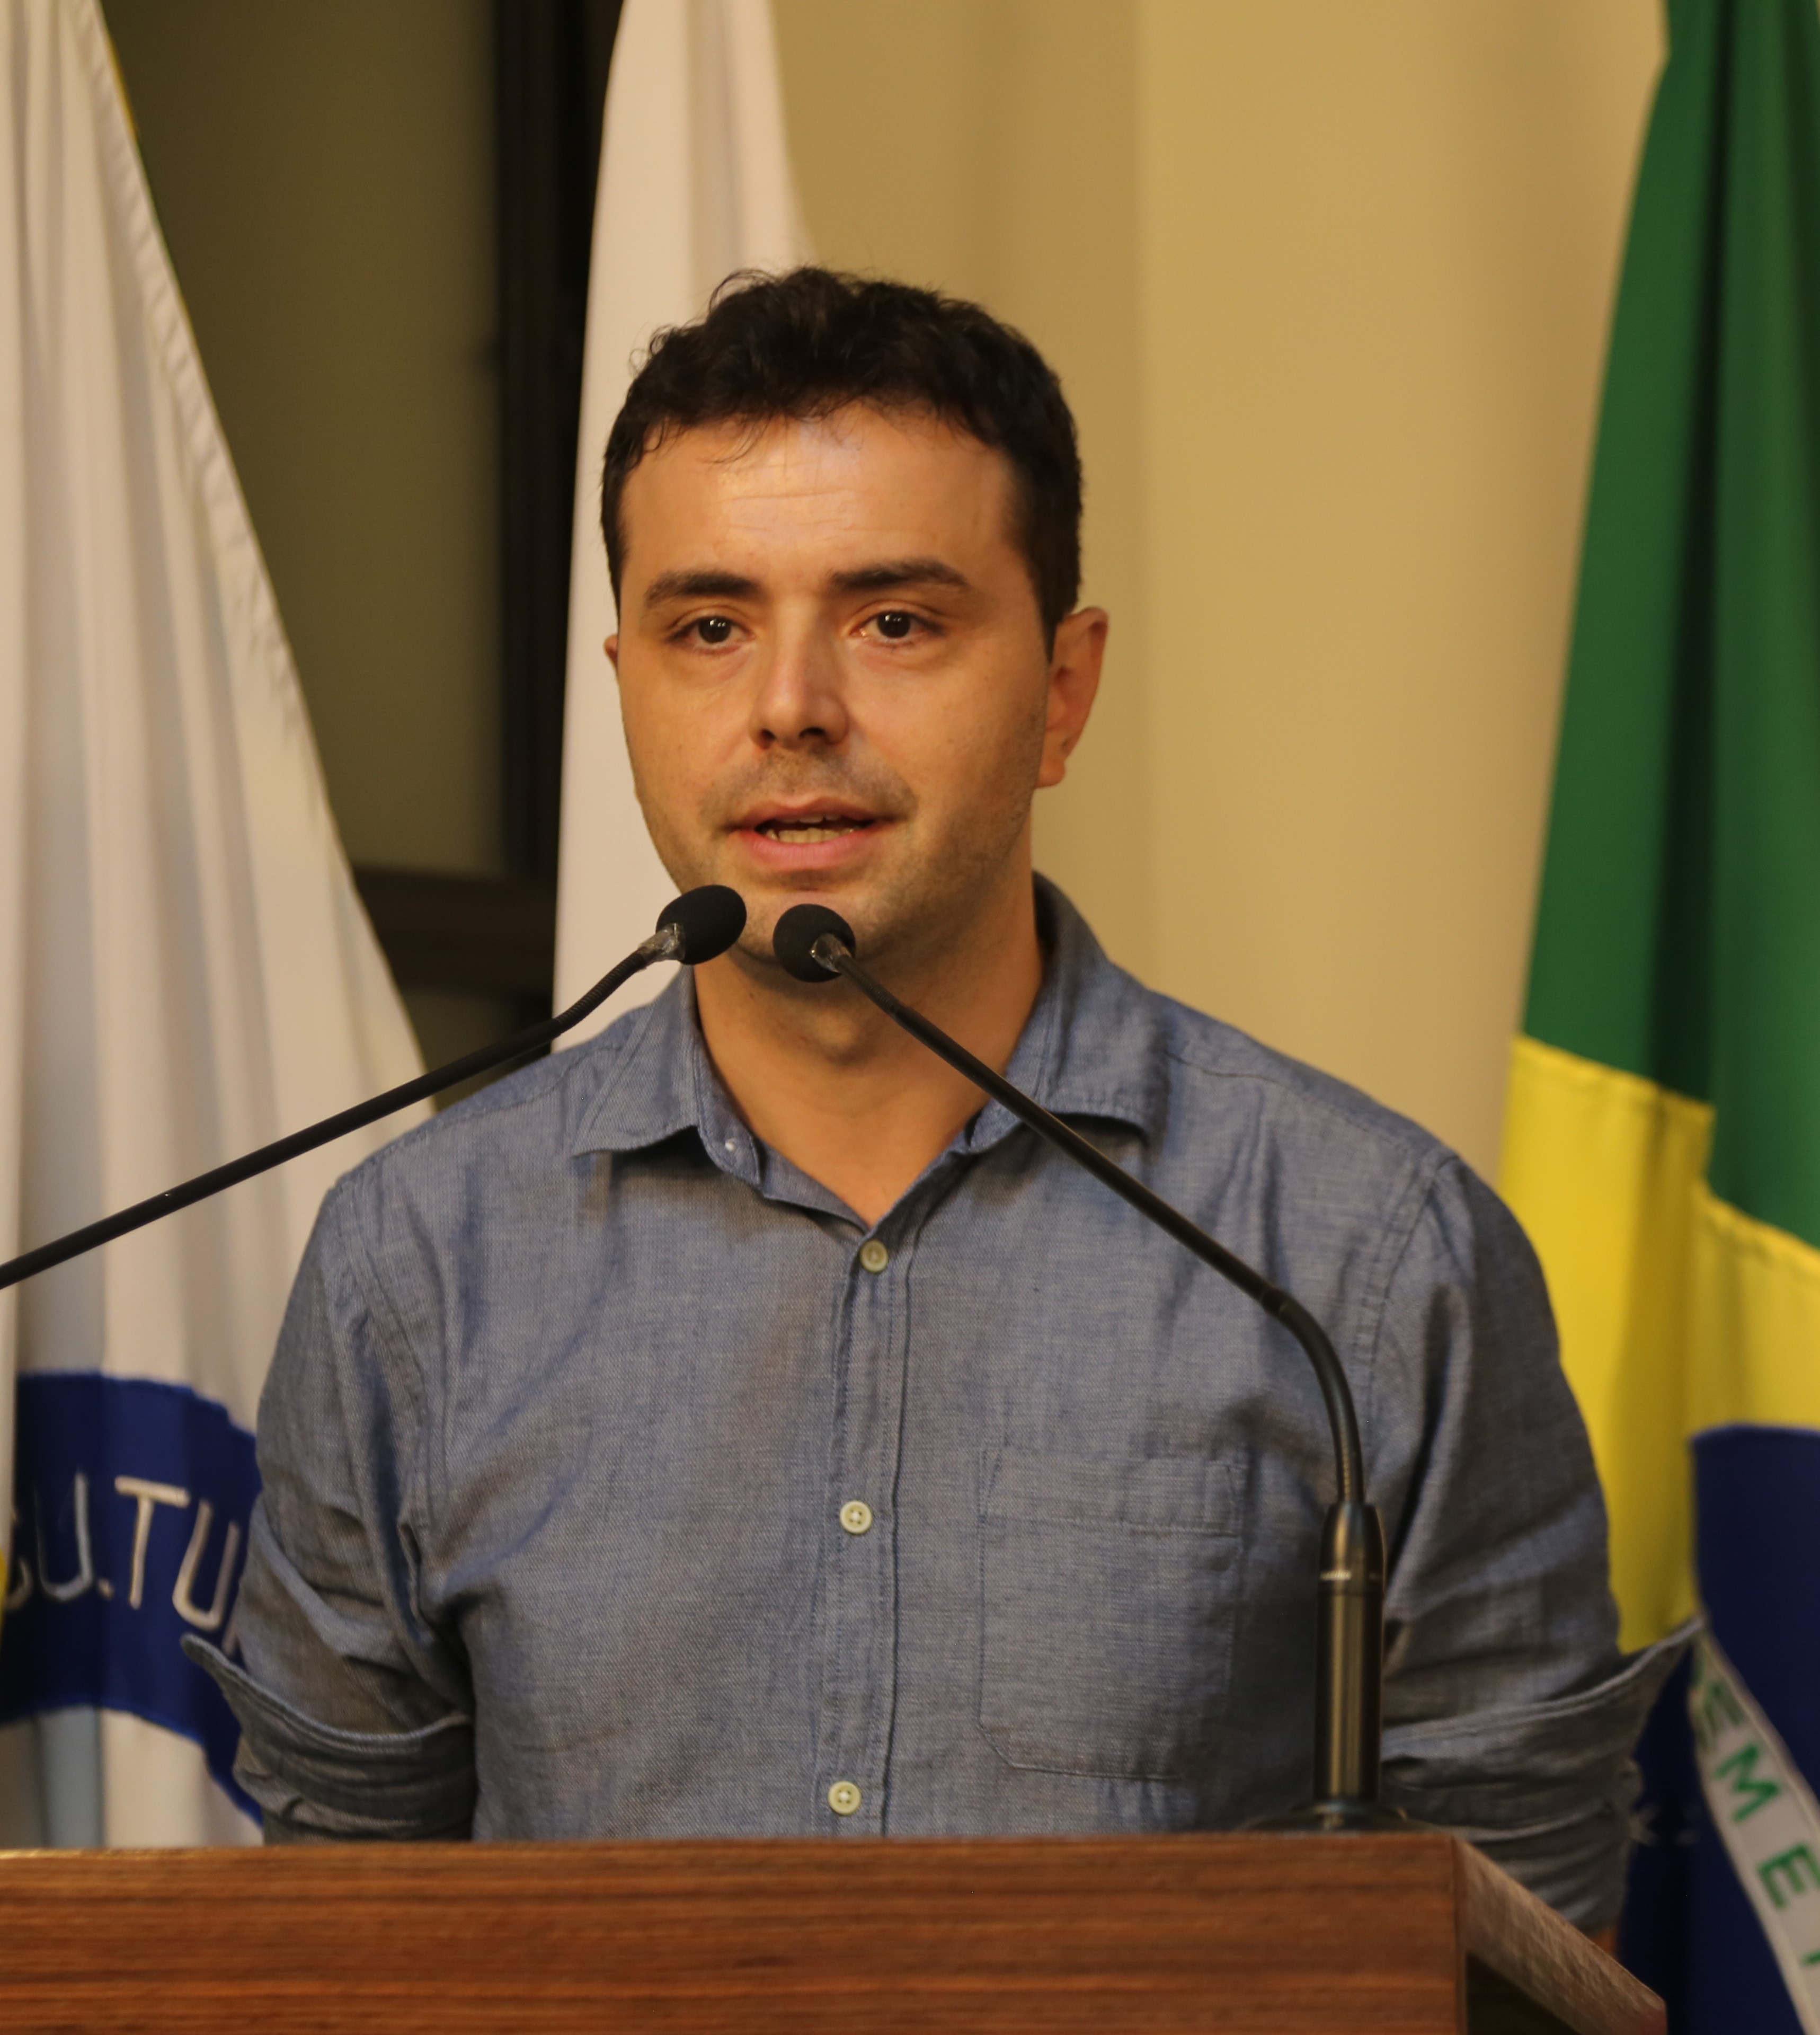 Tribuna Livre Luan Campos Monteiro, Secretário Municipal de Administração e Planejamento - Projeto Mais Viçosa